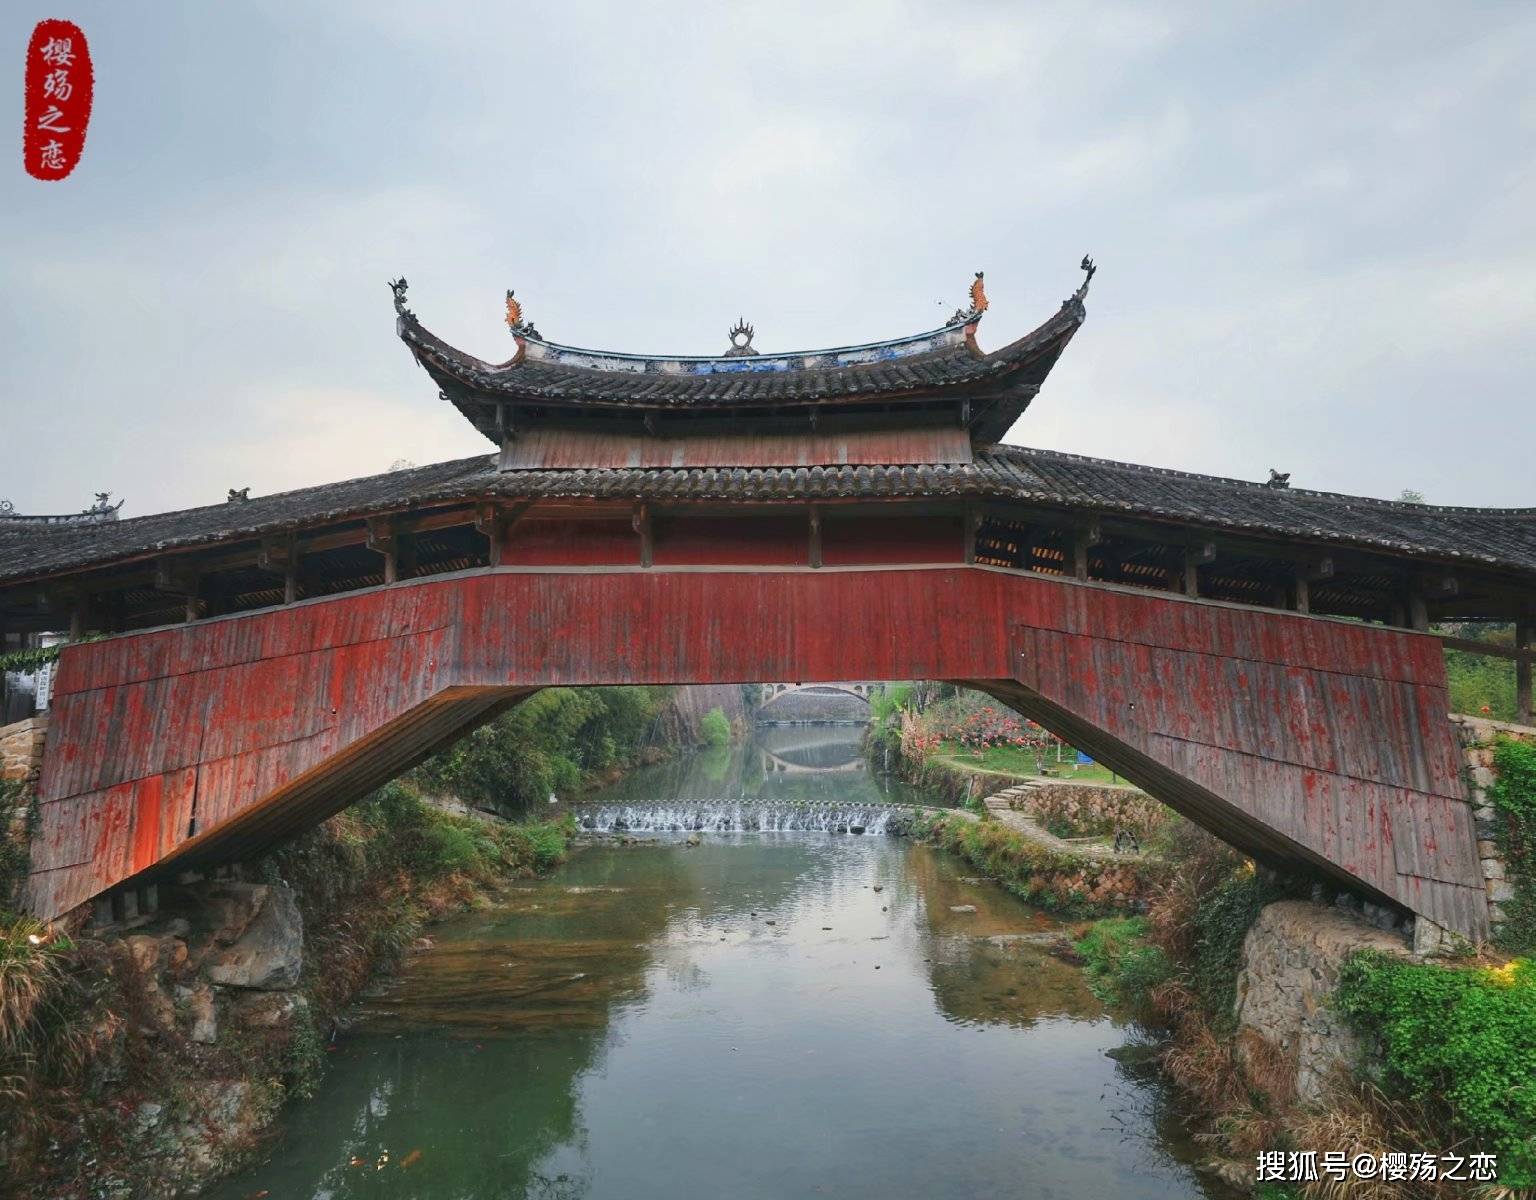 泰顺有一对“姐妹桥”，由师徒二人修建，被誉为“世界最美廊桥”